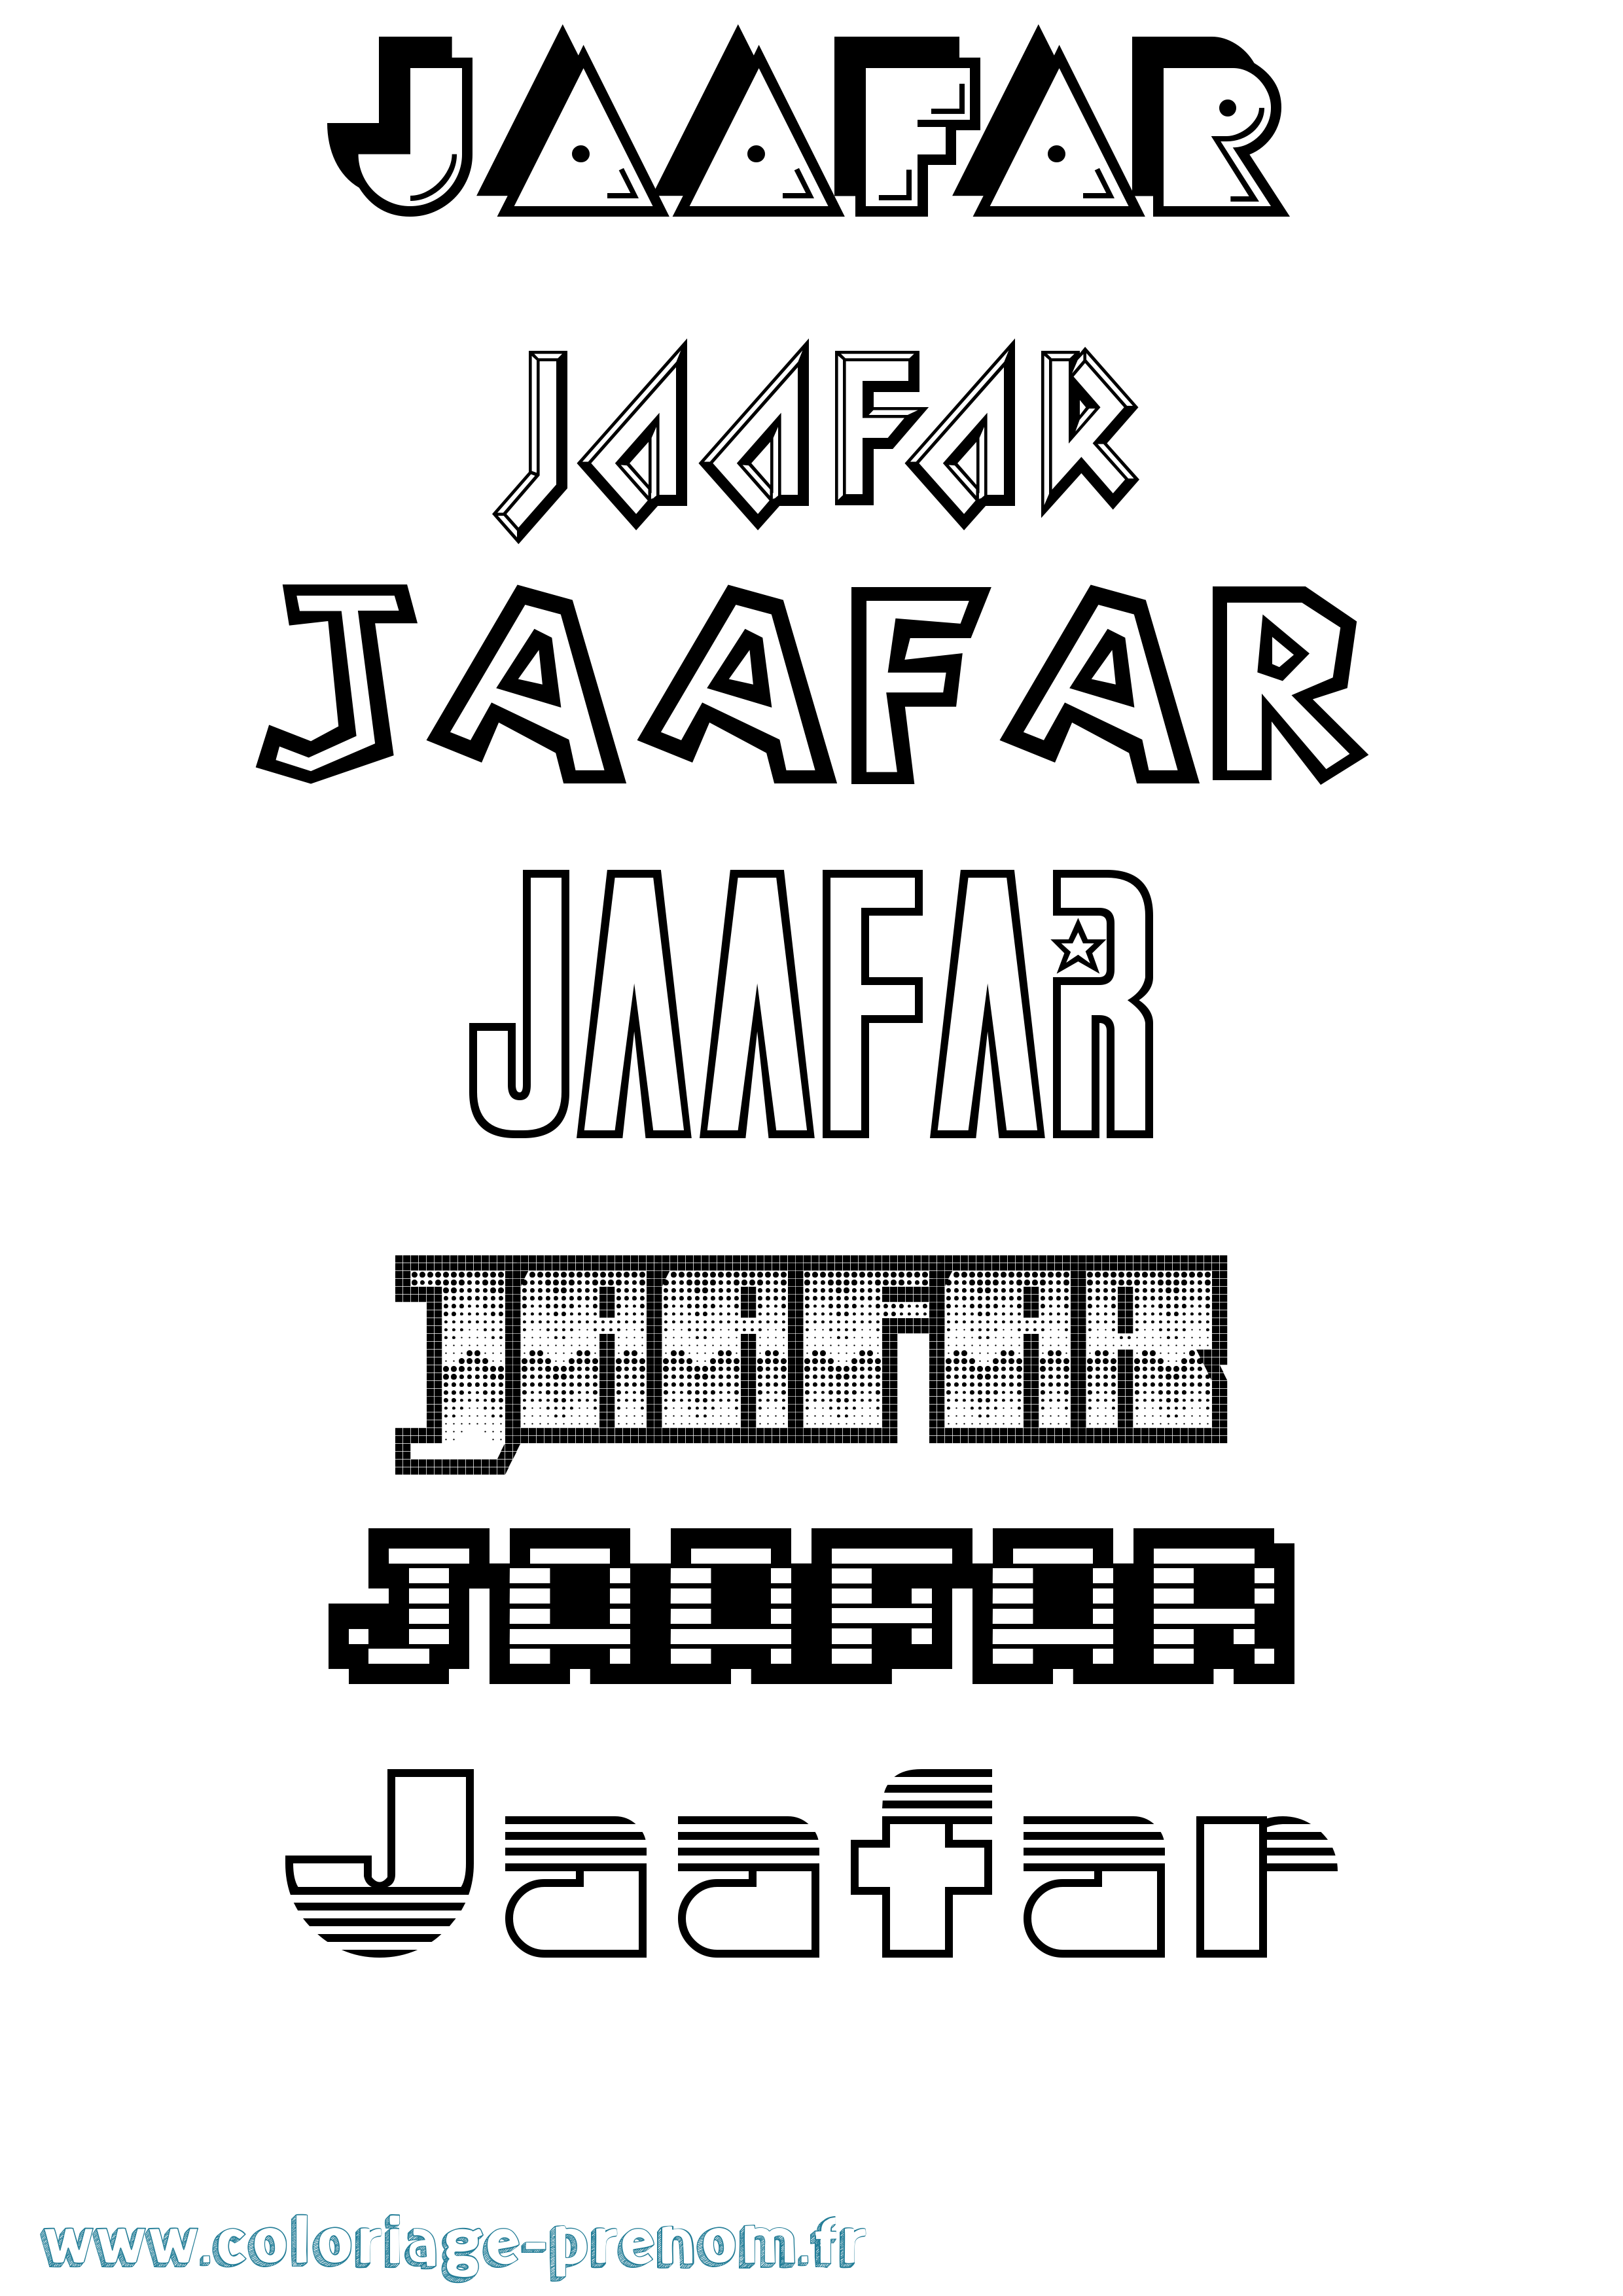 Coloriage prénom Jaafar Jeux Vidéos